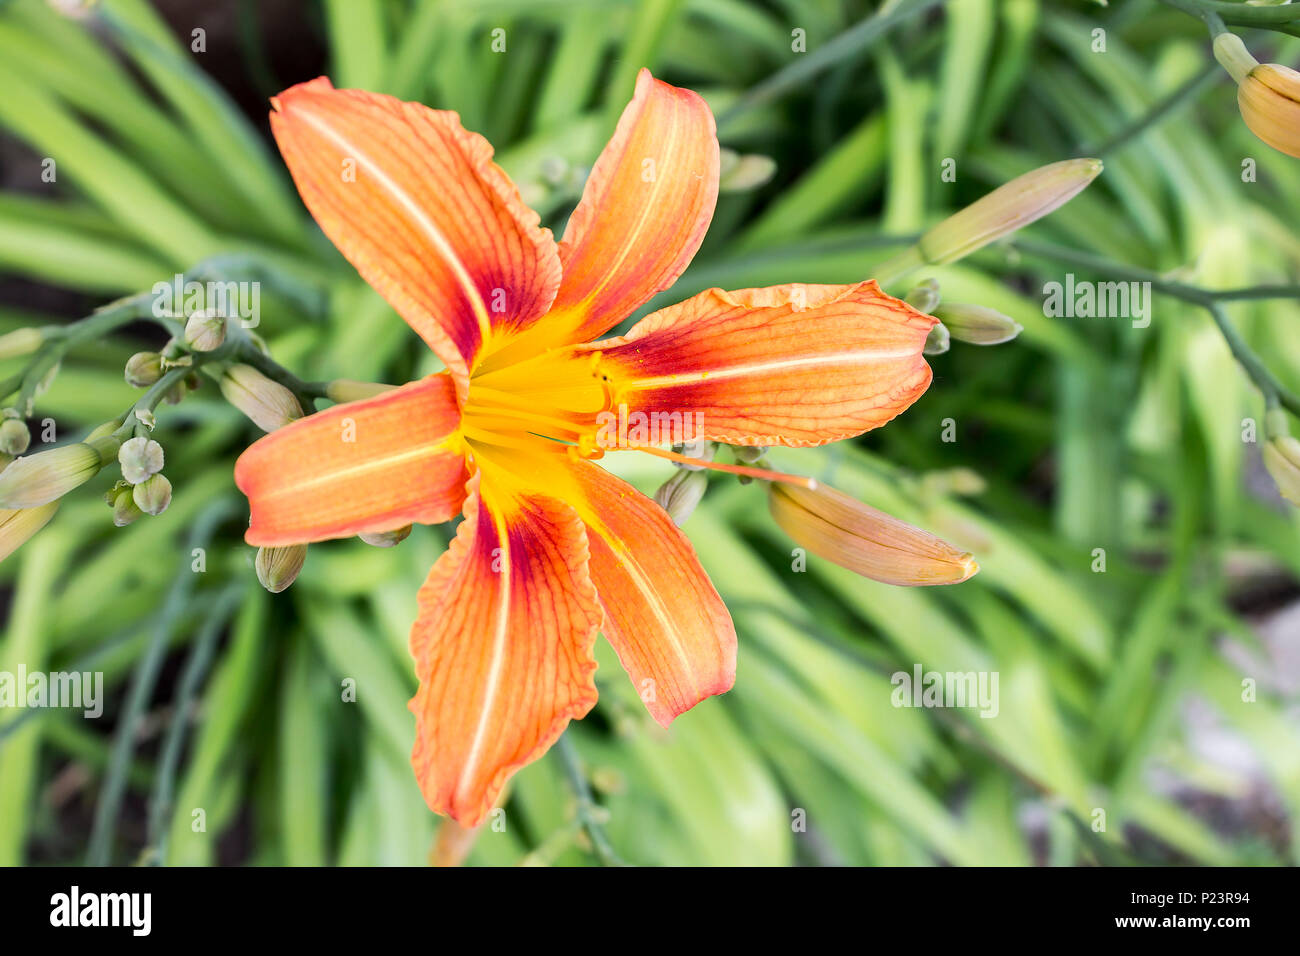 Photo de fleurs exotiques de lilie orange vert clair sur fond nature tropicale. Vue rapprochée Banque D'Images